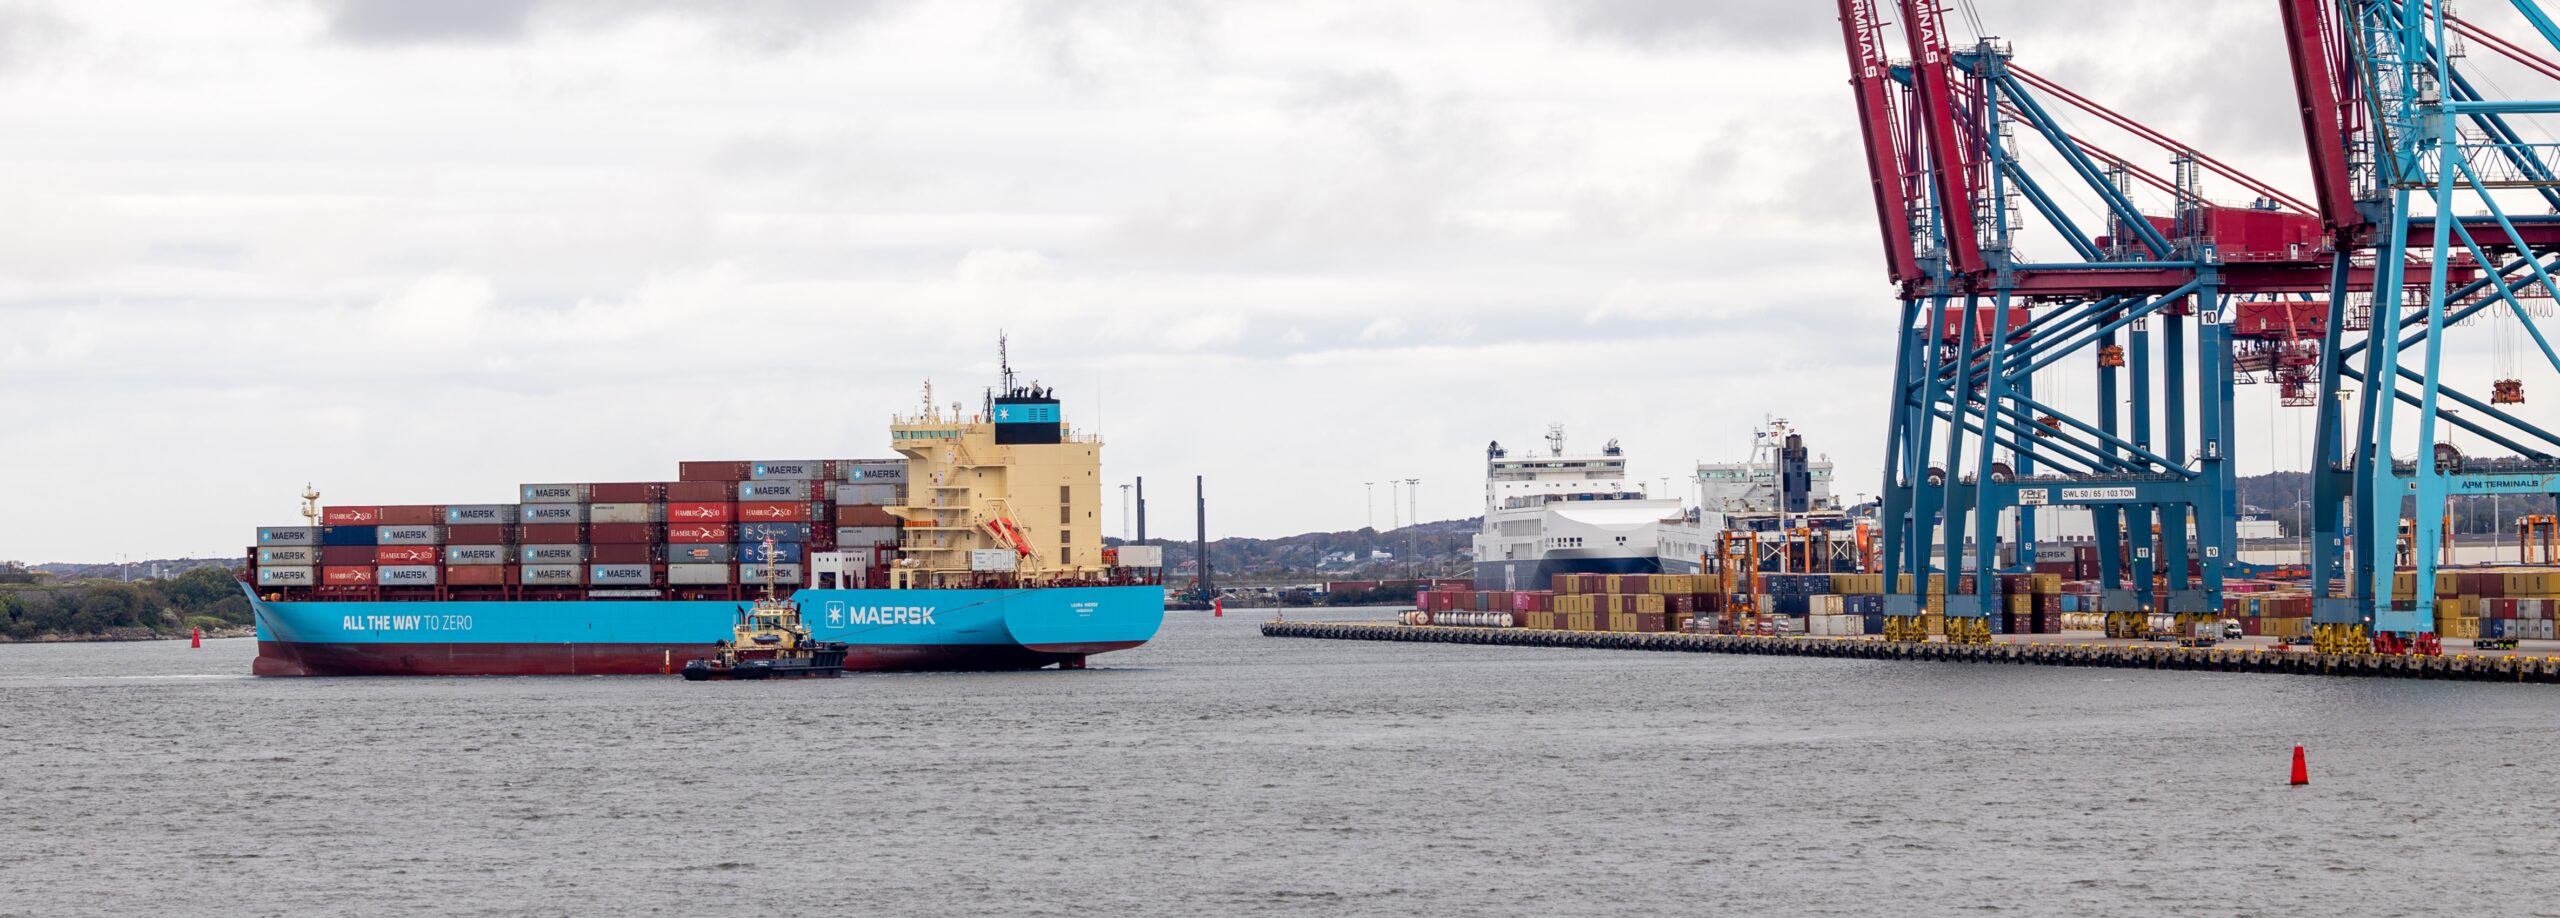 Världens första metanoldrivna fartyg anlöpte Göteborgs hamn